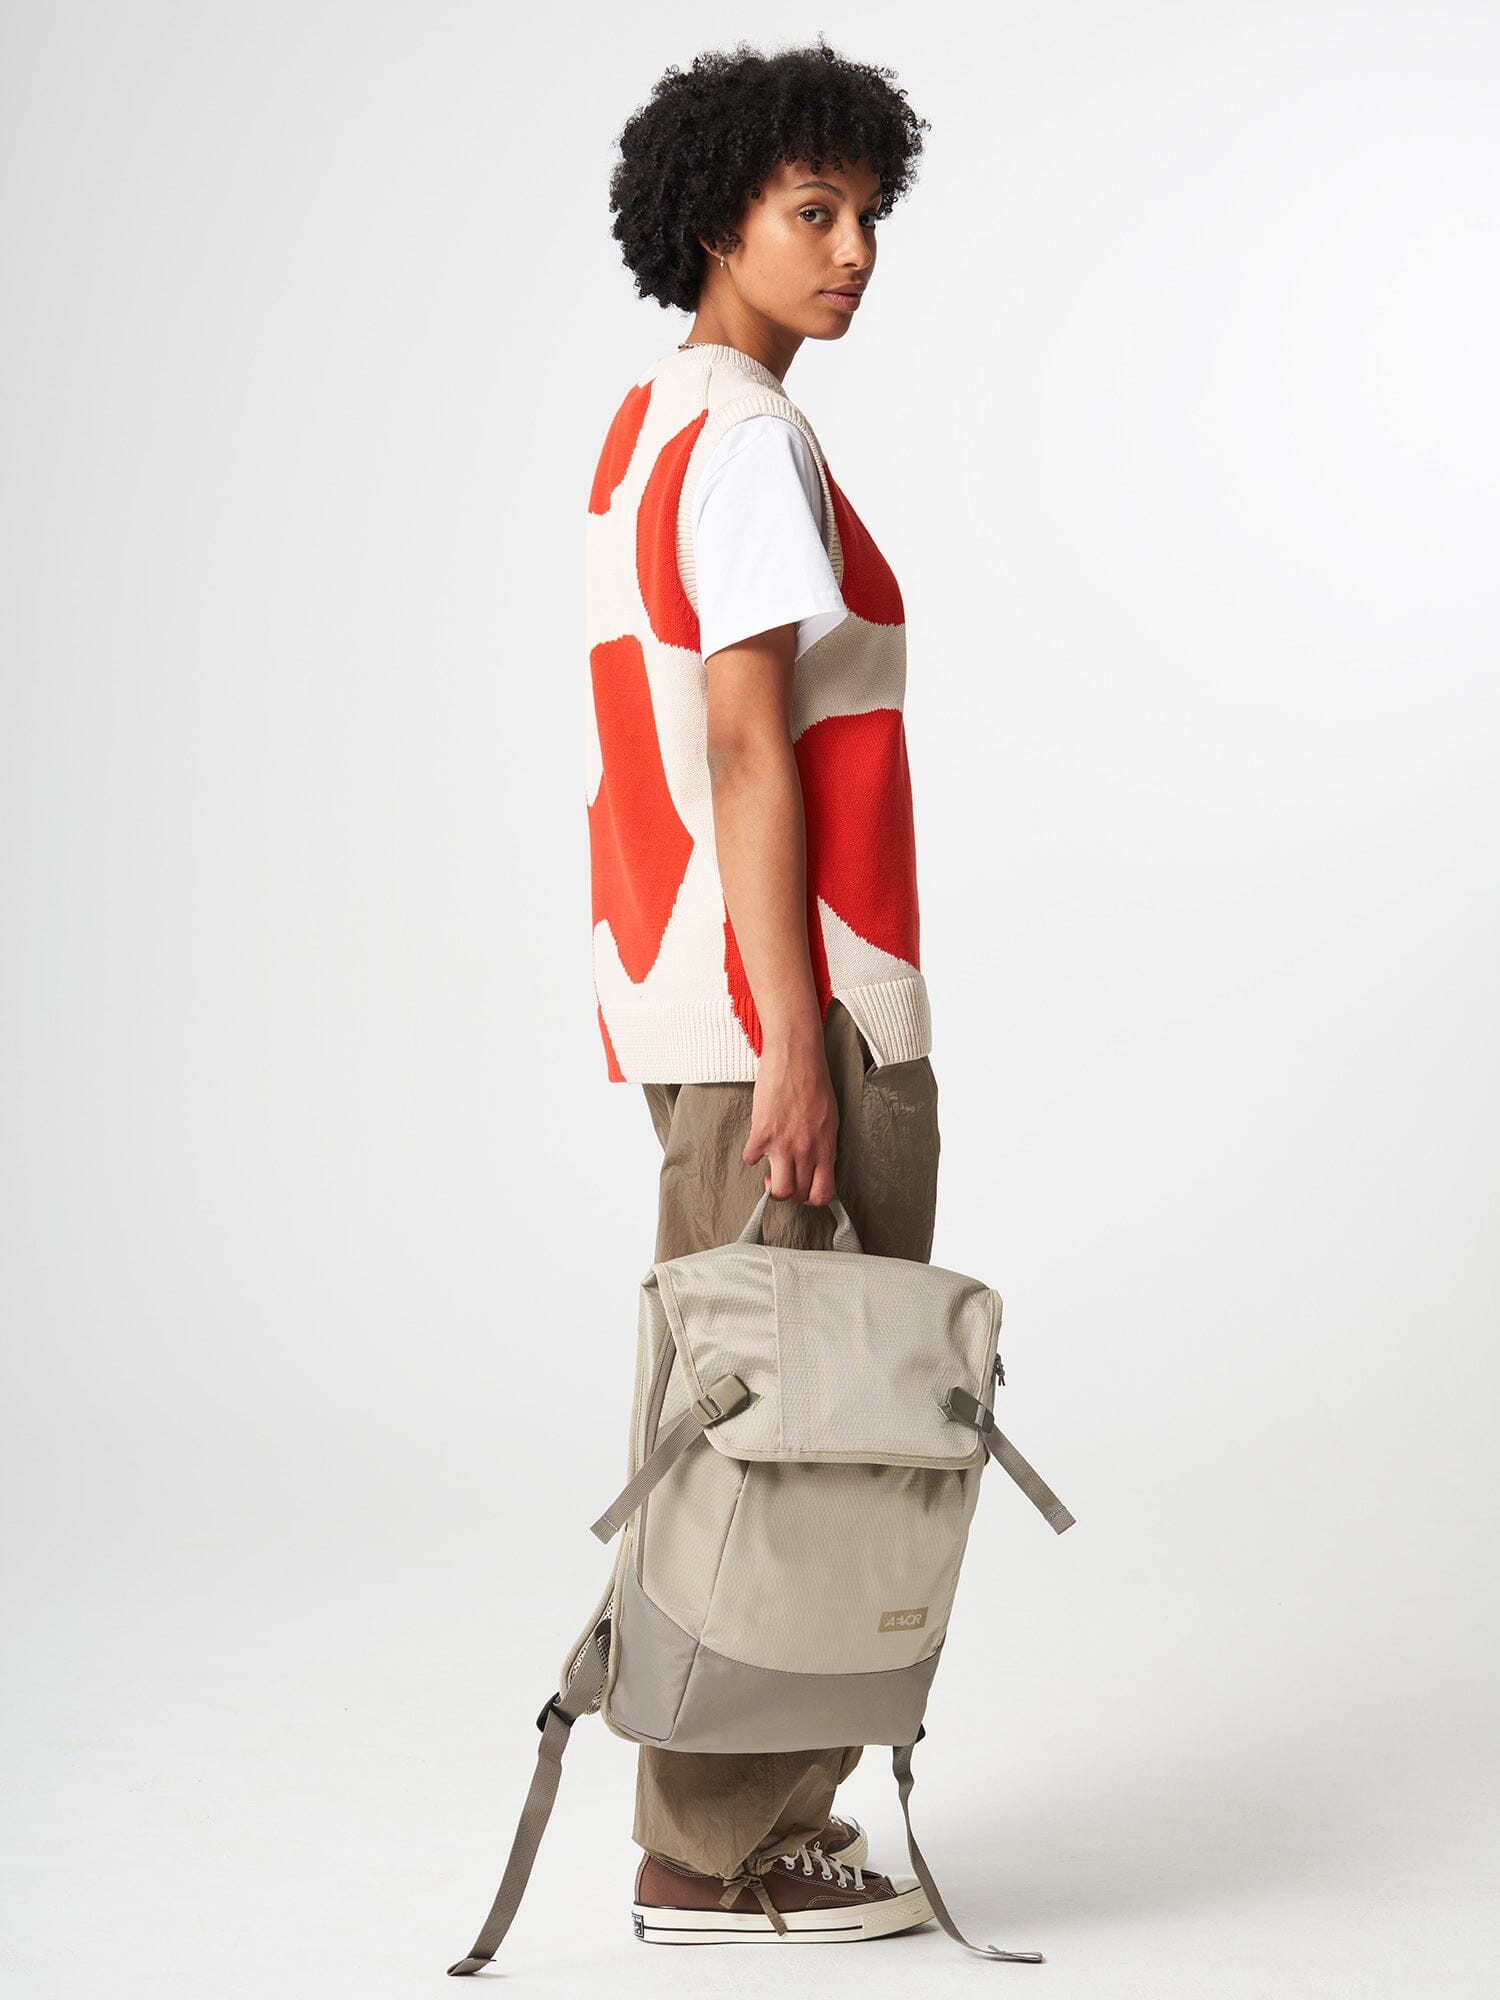 Aevor Daypack Proof - Waterproof Bag Made from Recycled PET-bottles Venus Bags